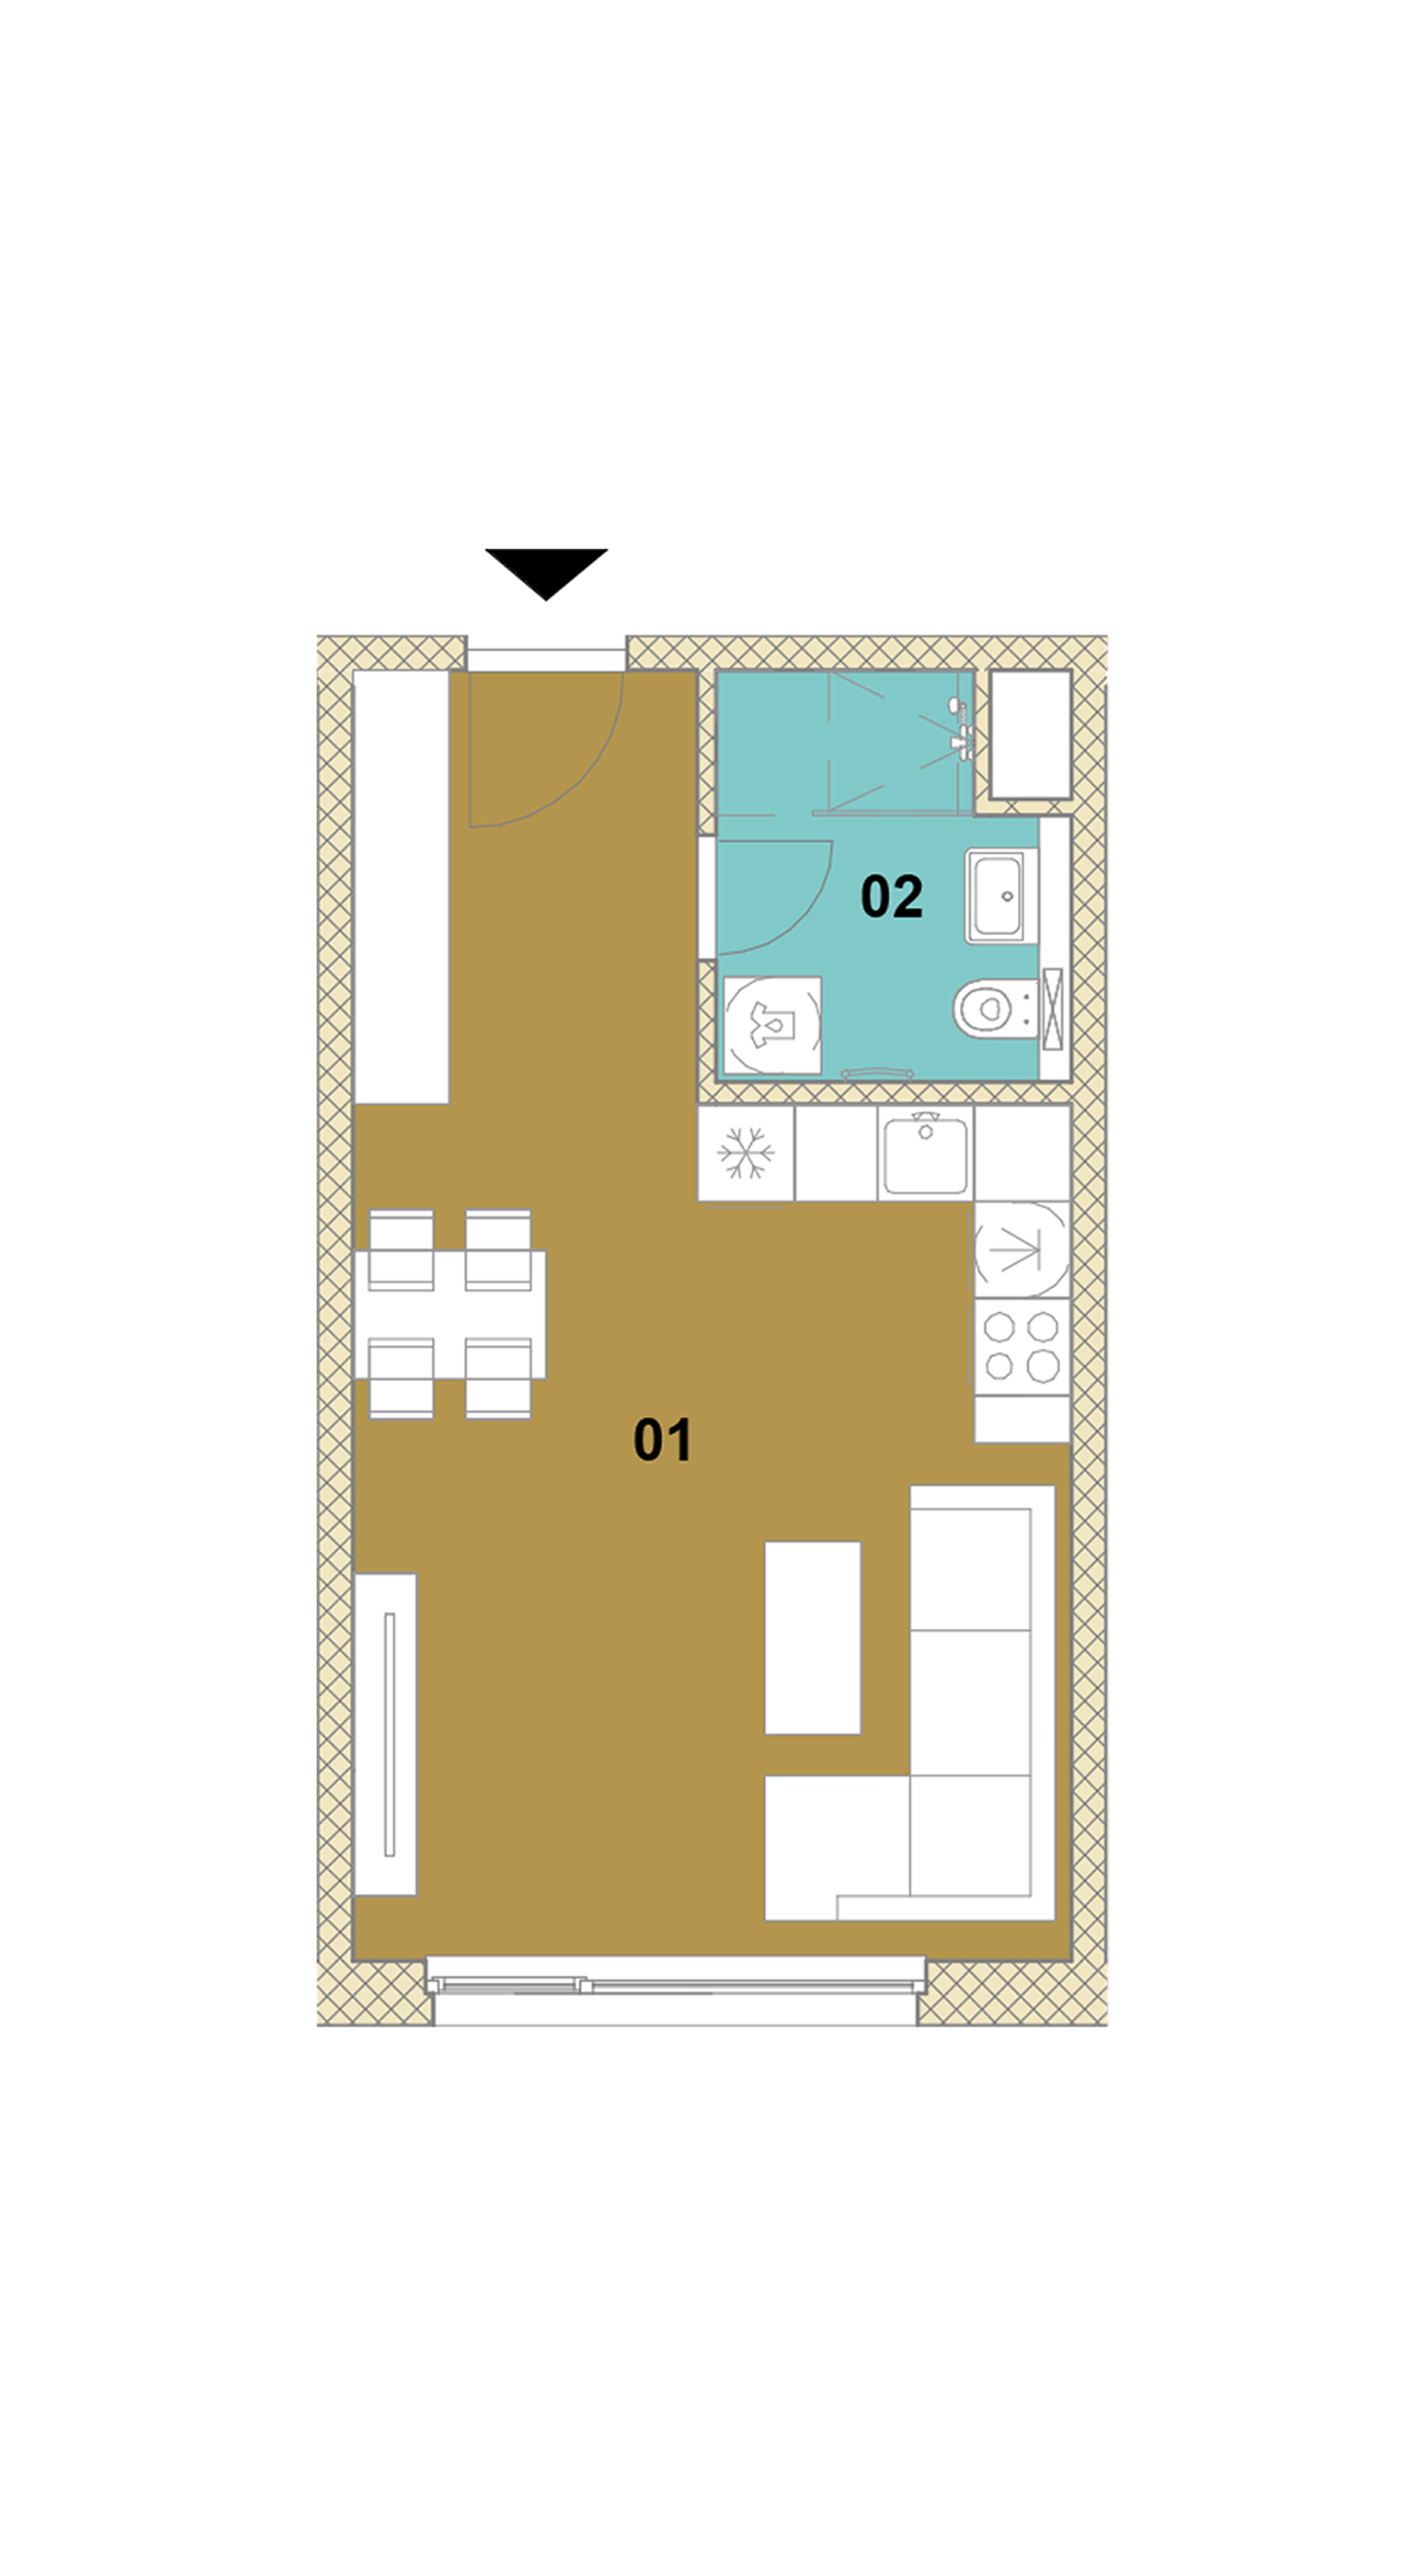 Jednoizbový byt D1-303